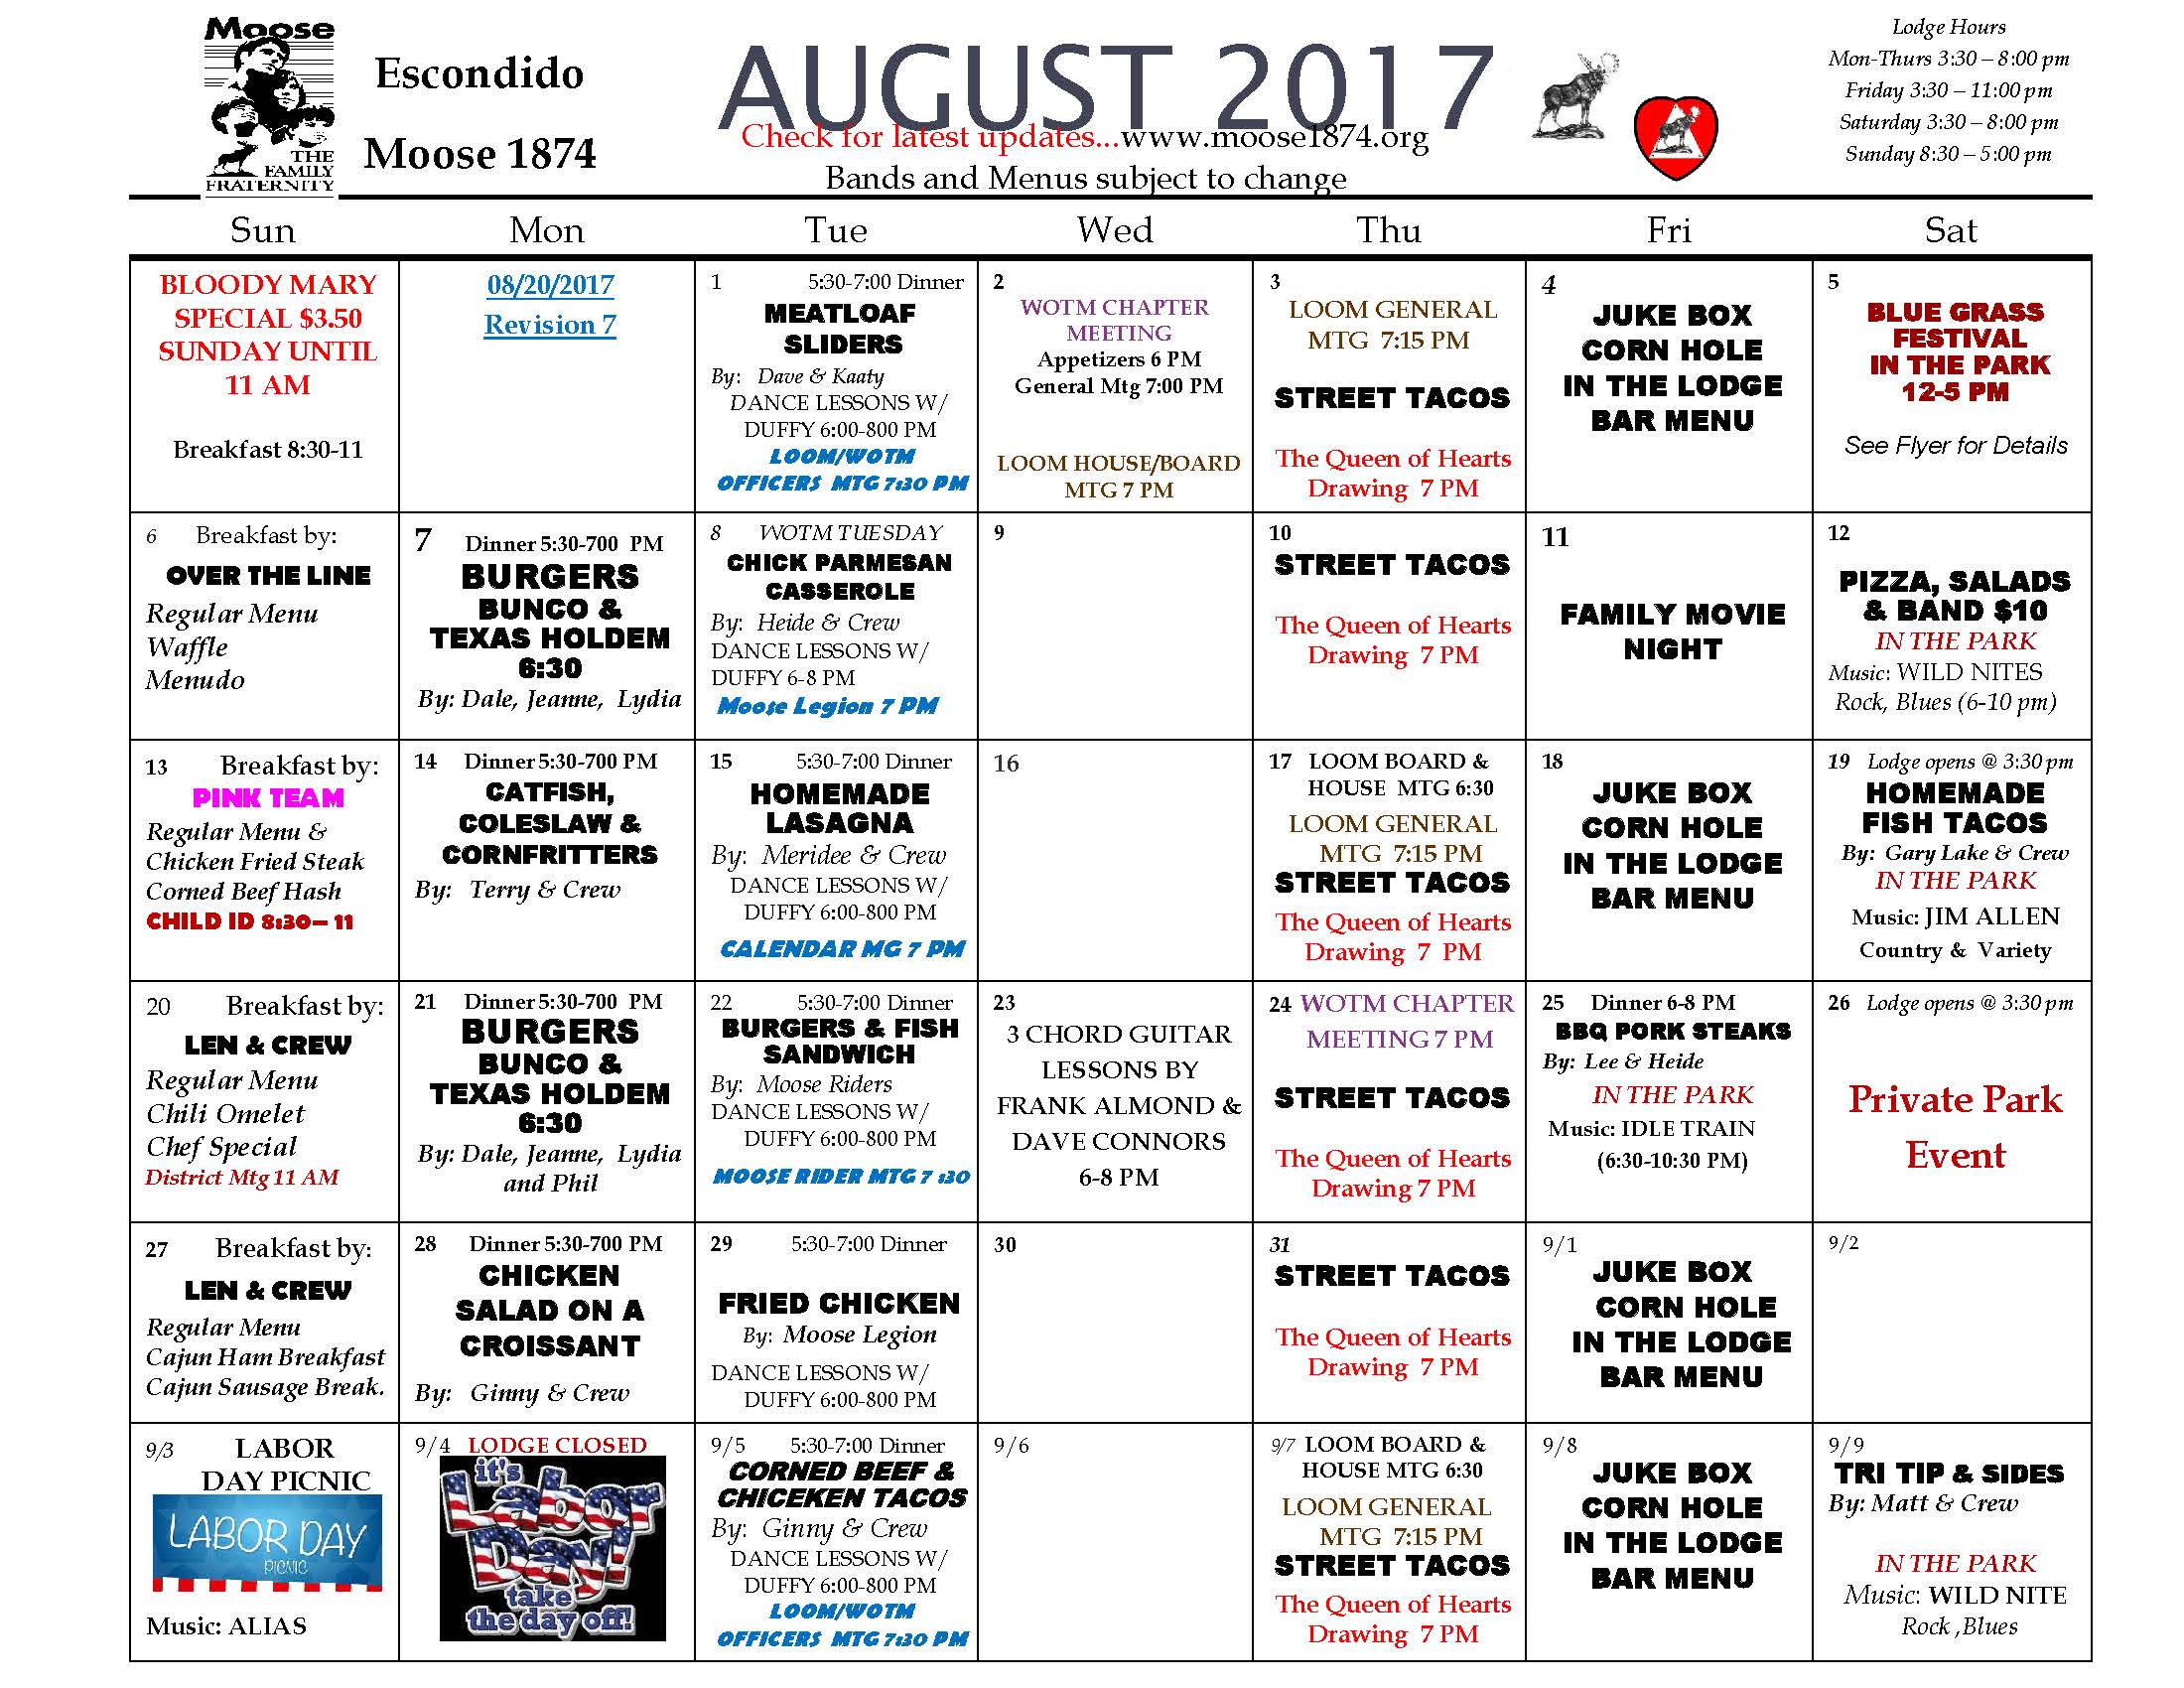 Moose Calendar AUGUST 2017-7 - Moose 1874